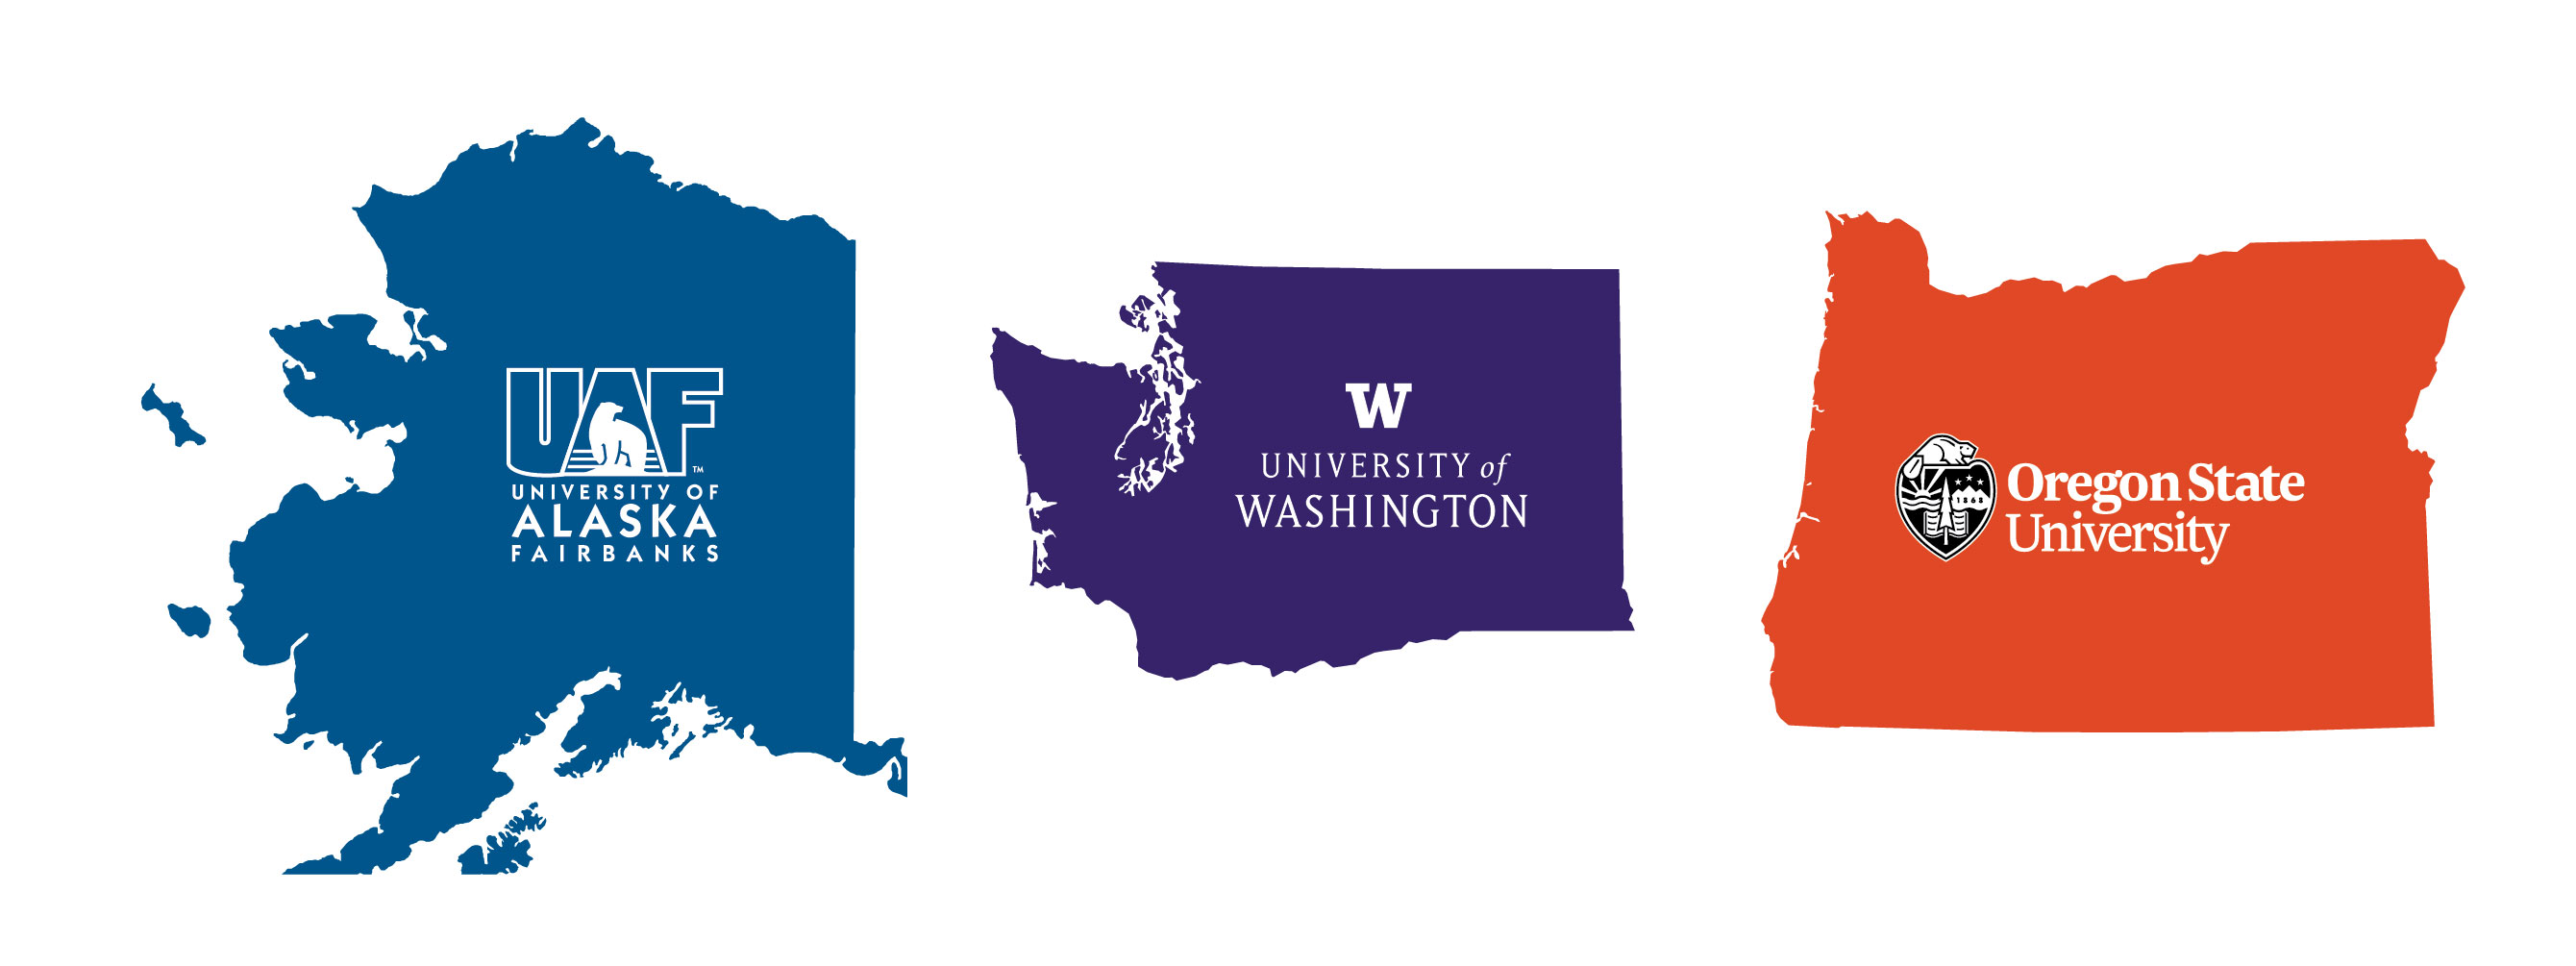 Logos for University of Alaska, University of Washington, and Oregon State university.